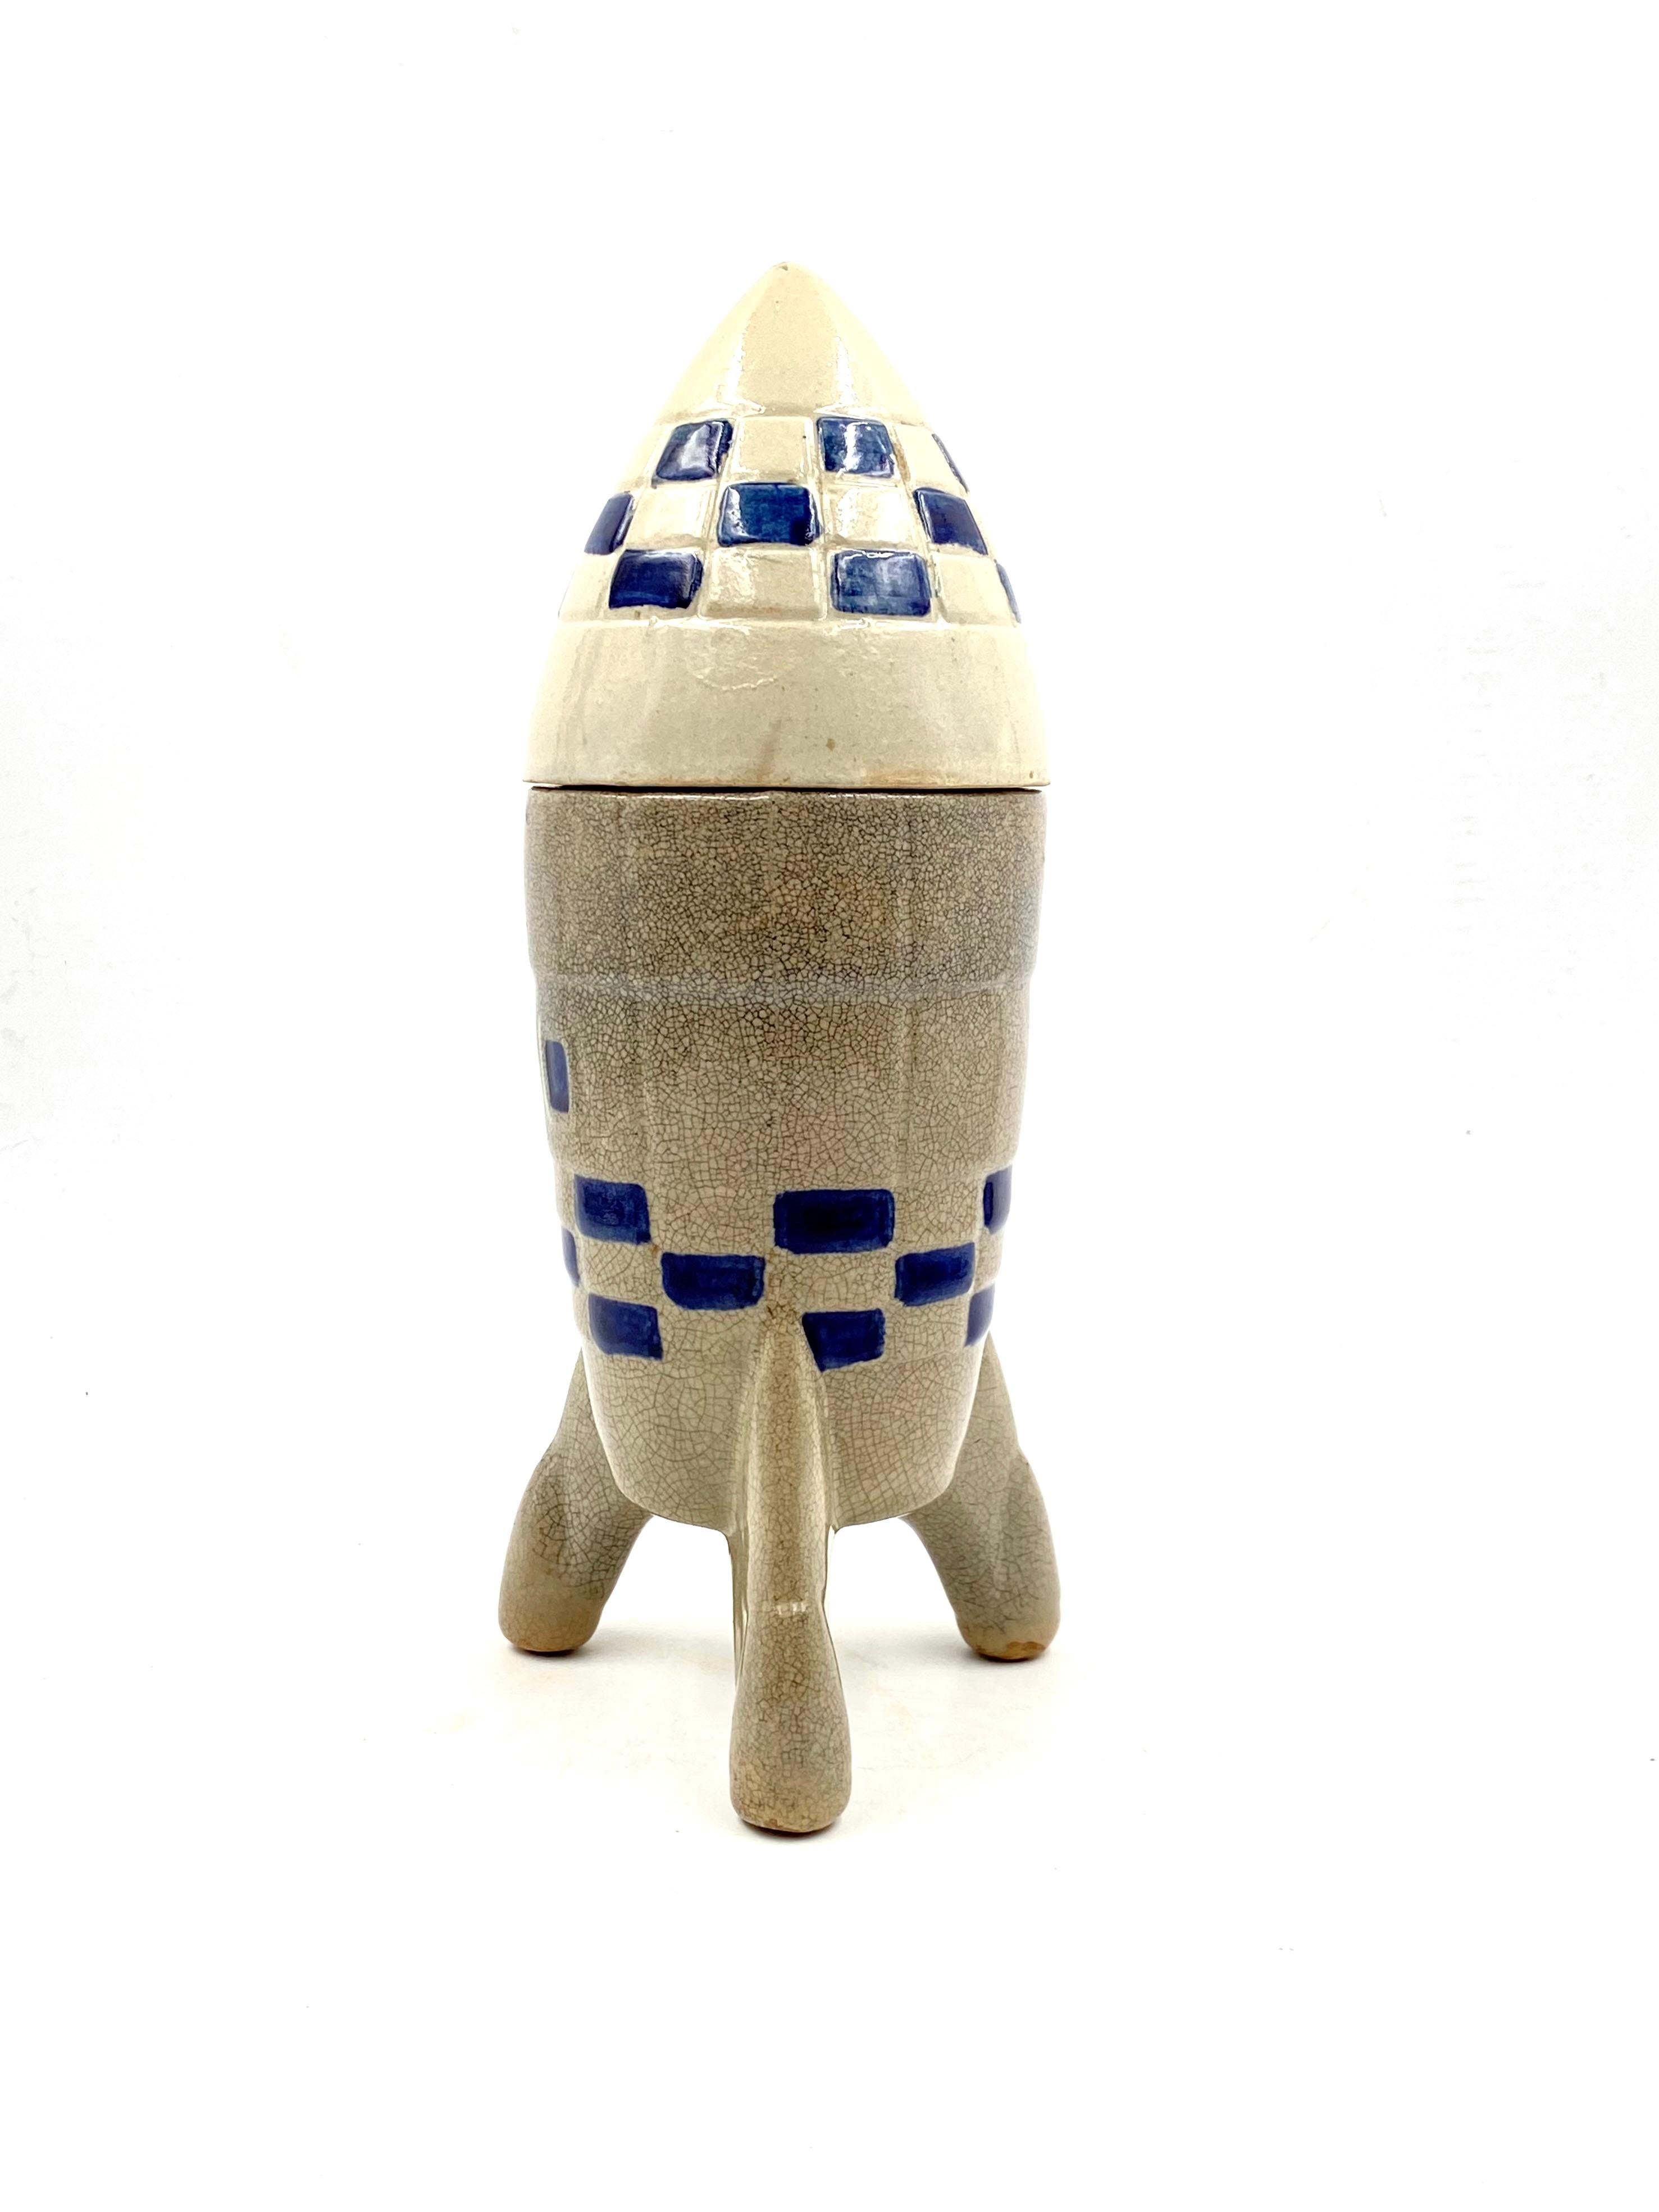 Ceramic Rocket / Spaceship Bottle / Decanter, France, 1940s-1950s For Sale 1